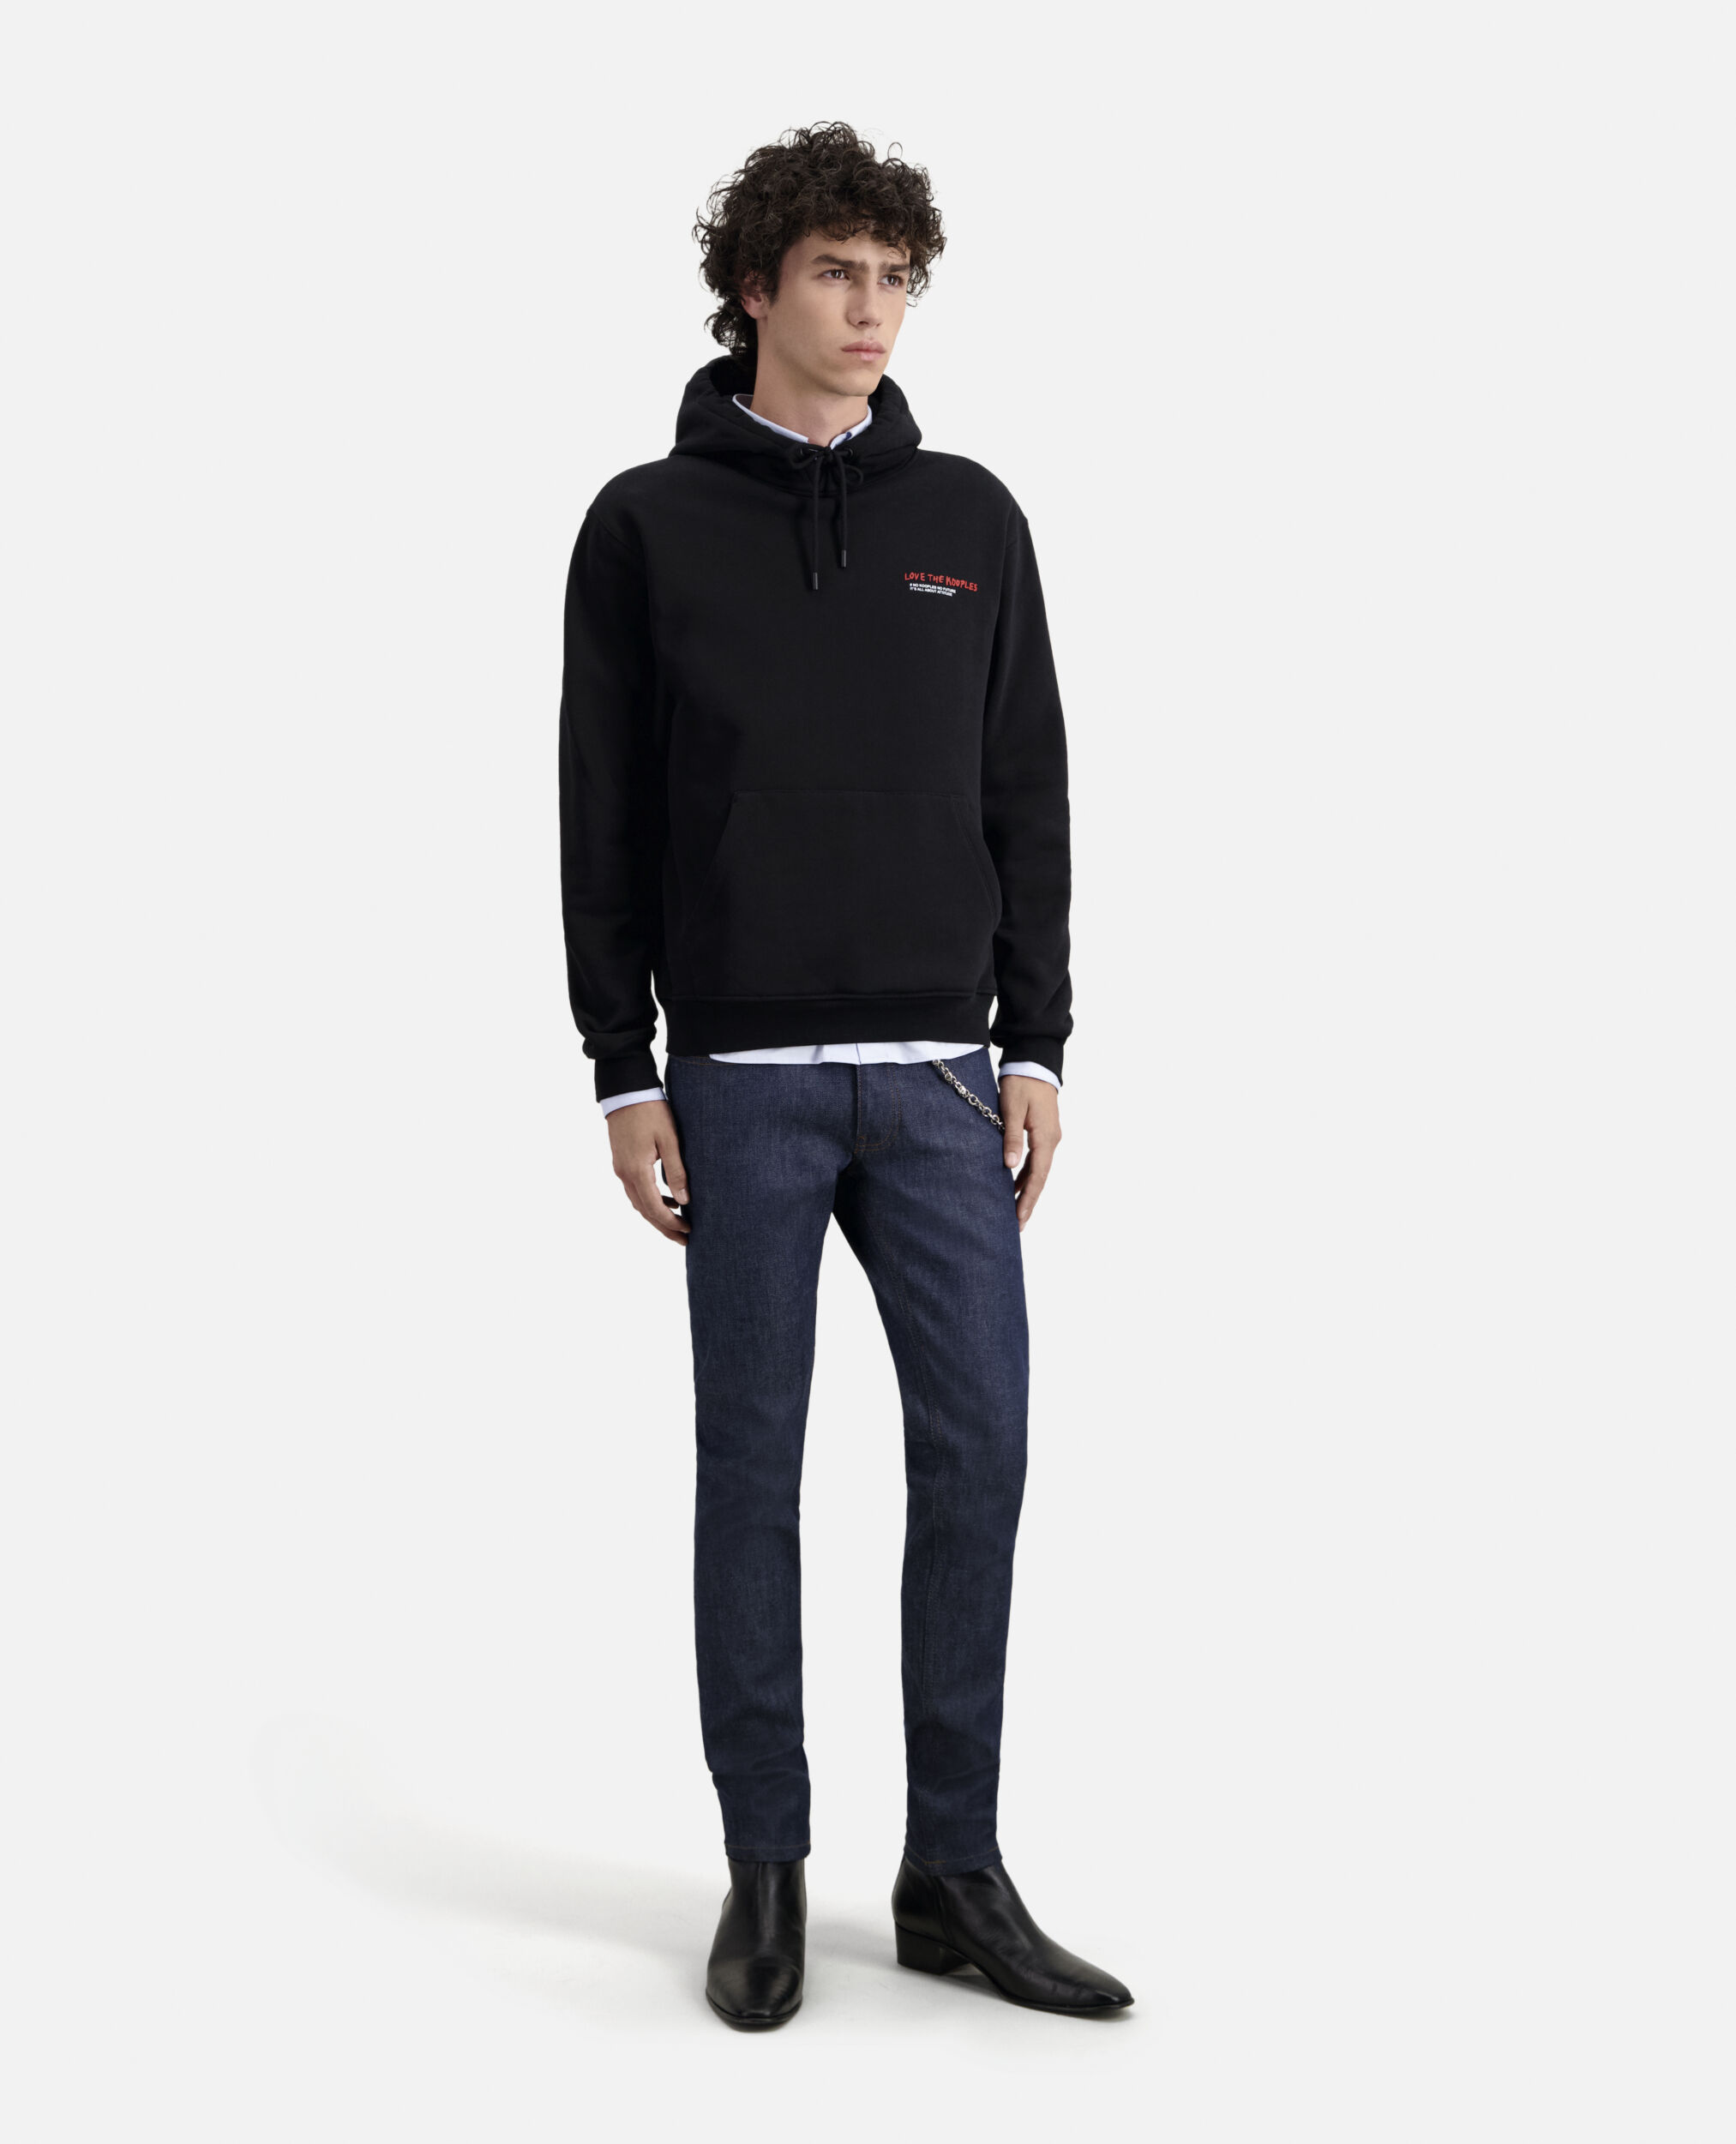 Sweatshirt I Love Kooples noir, BLACK, hi-res image number null